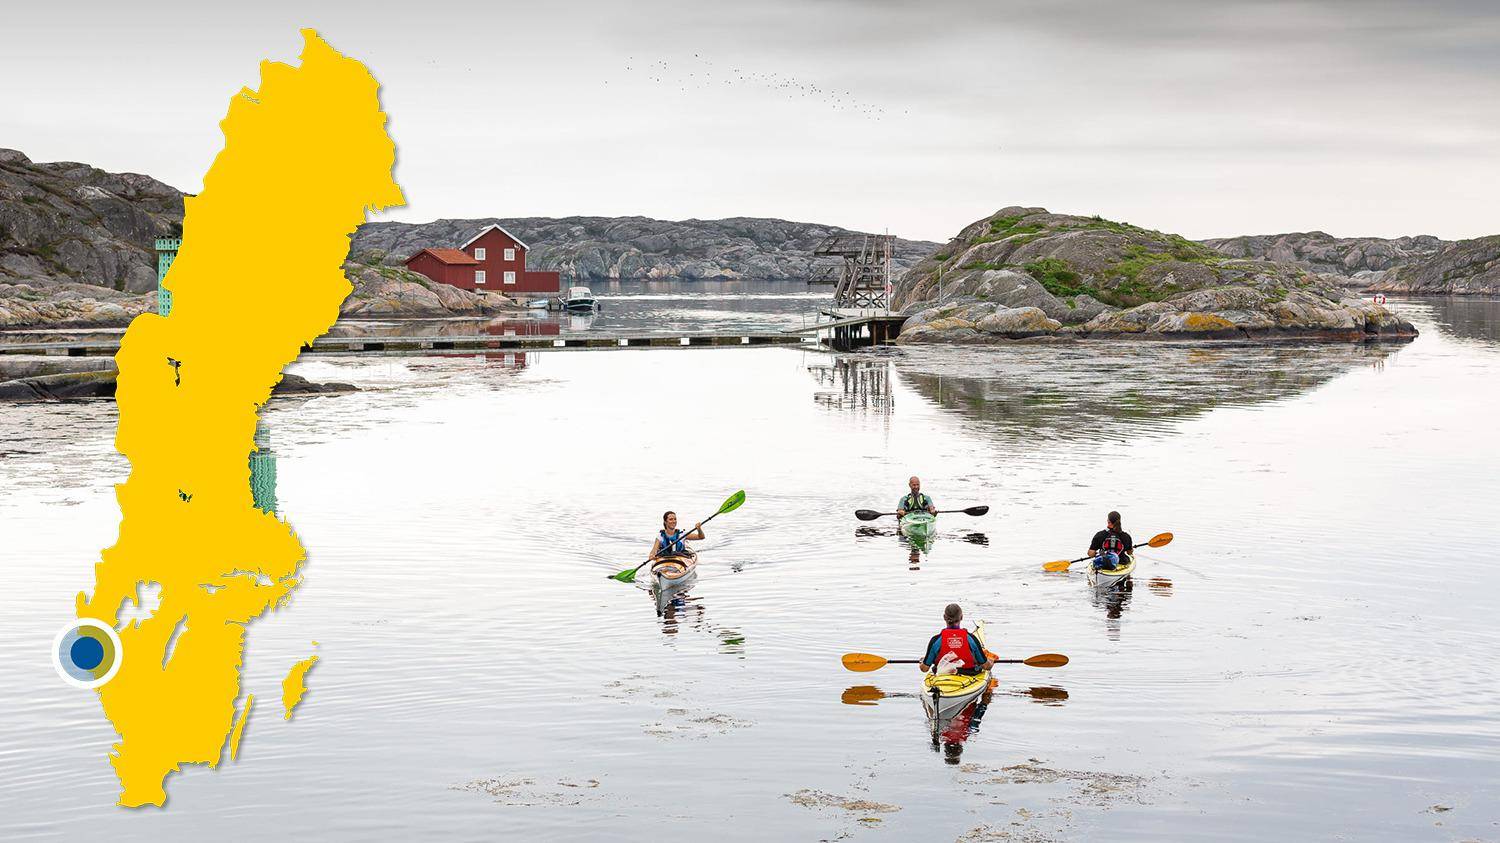 Vier mensen kajakken in de archipel. Er is een gele kaart van Zweden met een blauwe stip die de locatie van Skärhamn aangeeft.